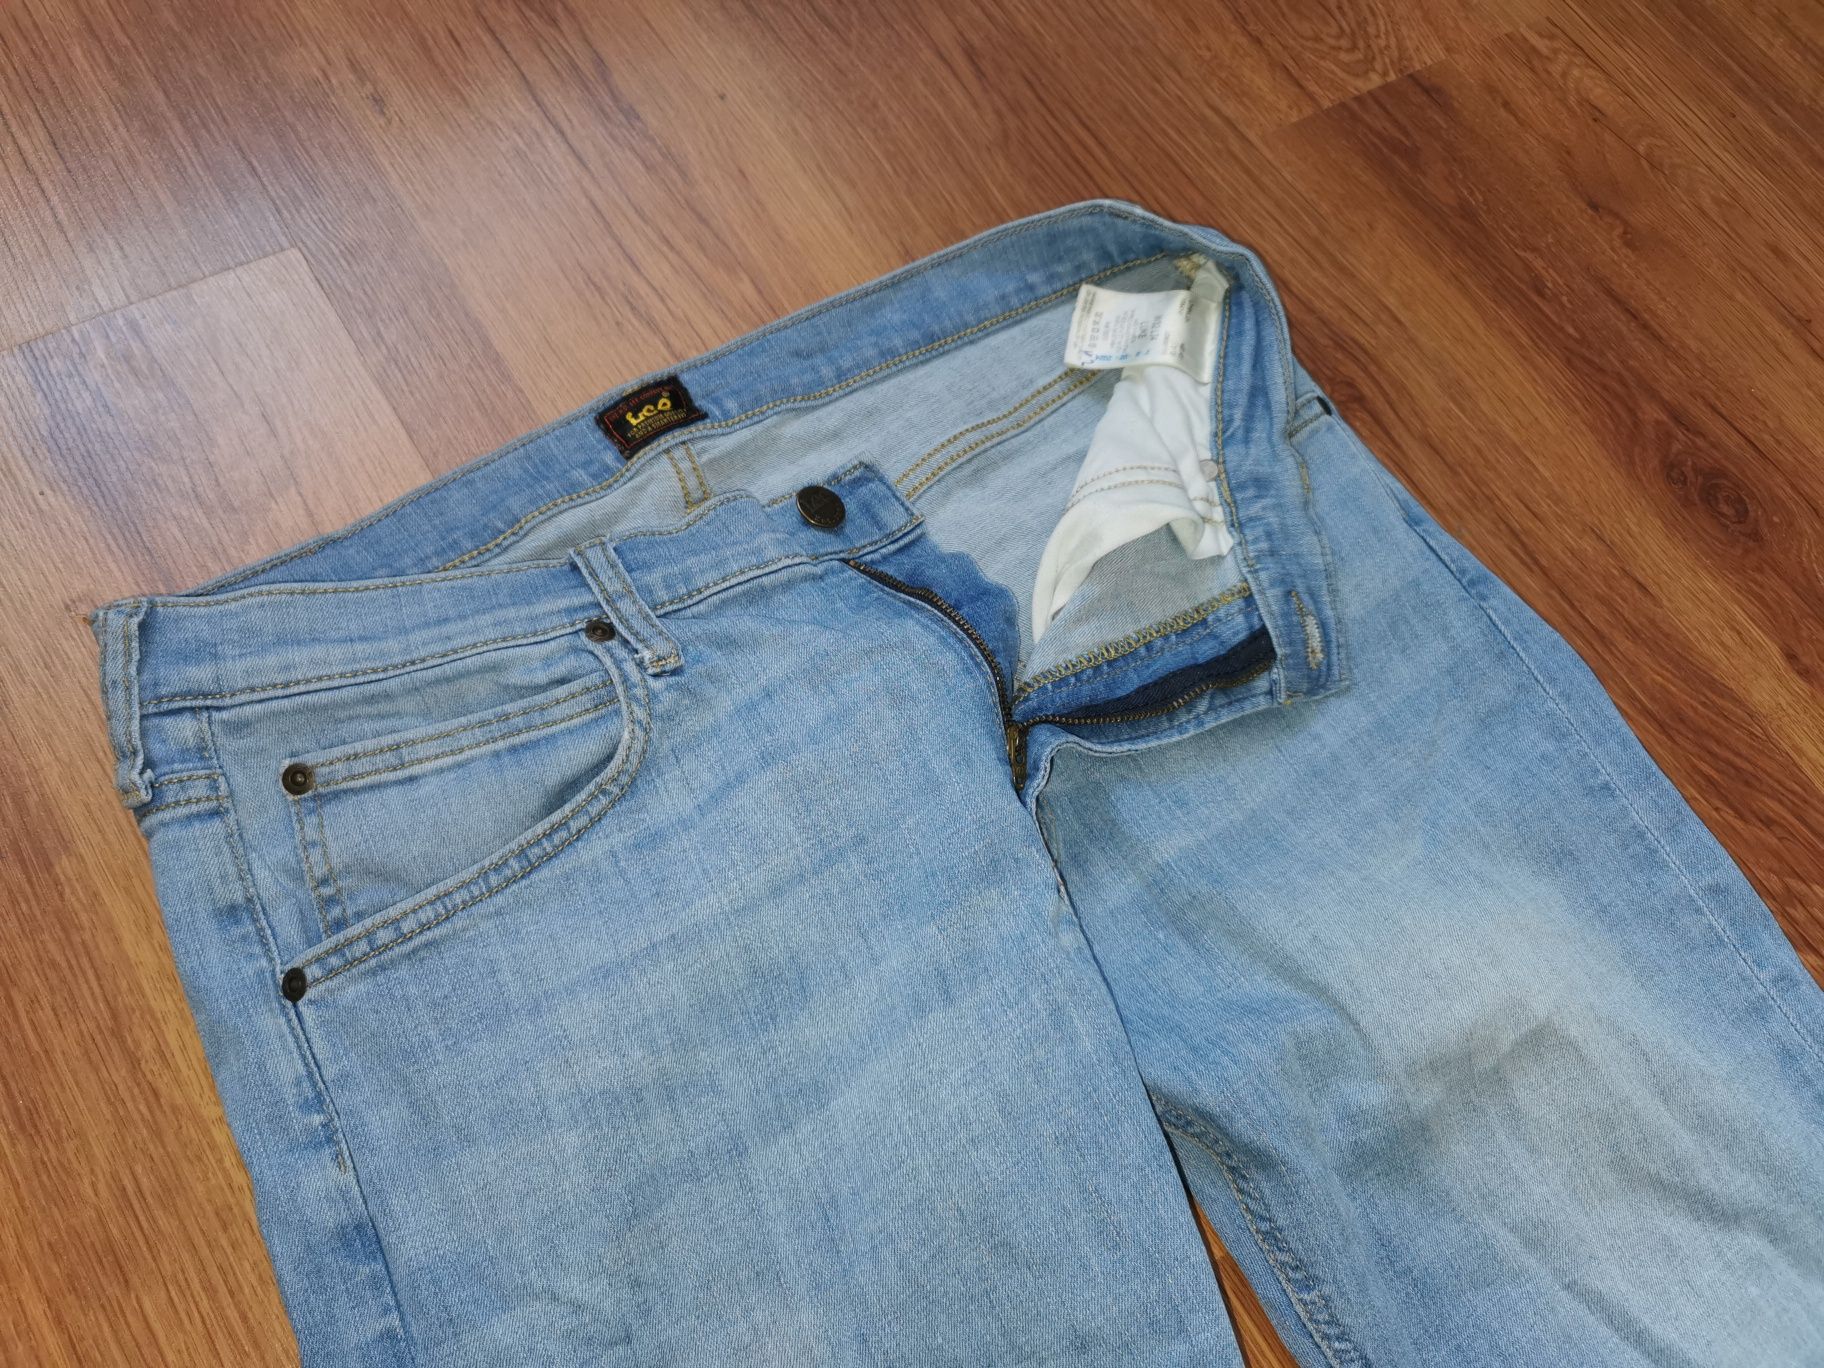 LEE LUKE W32 L34 spodnie jeansowe jeansy